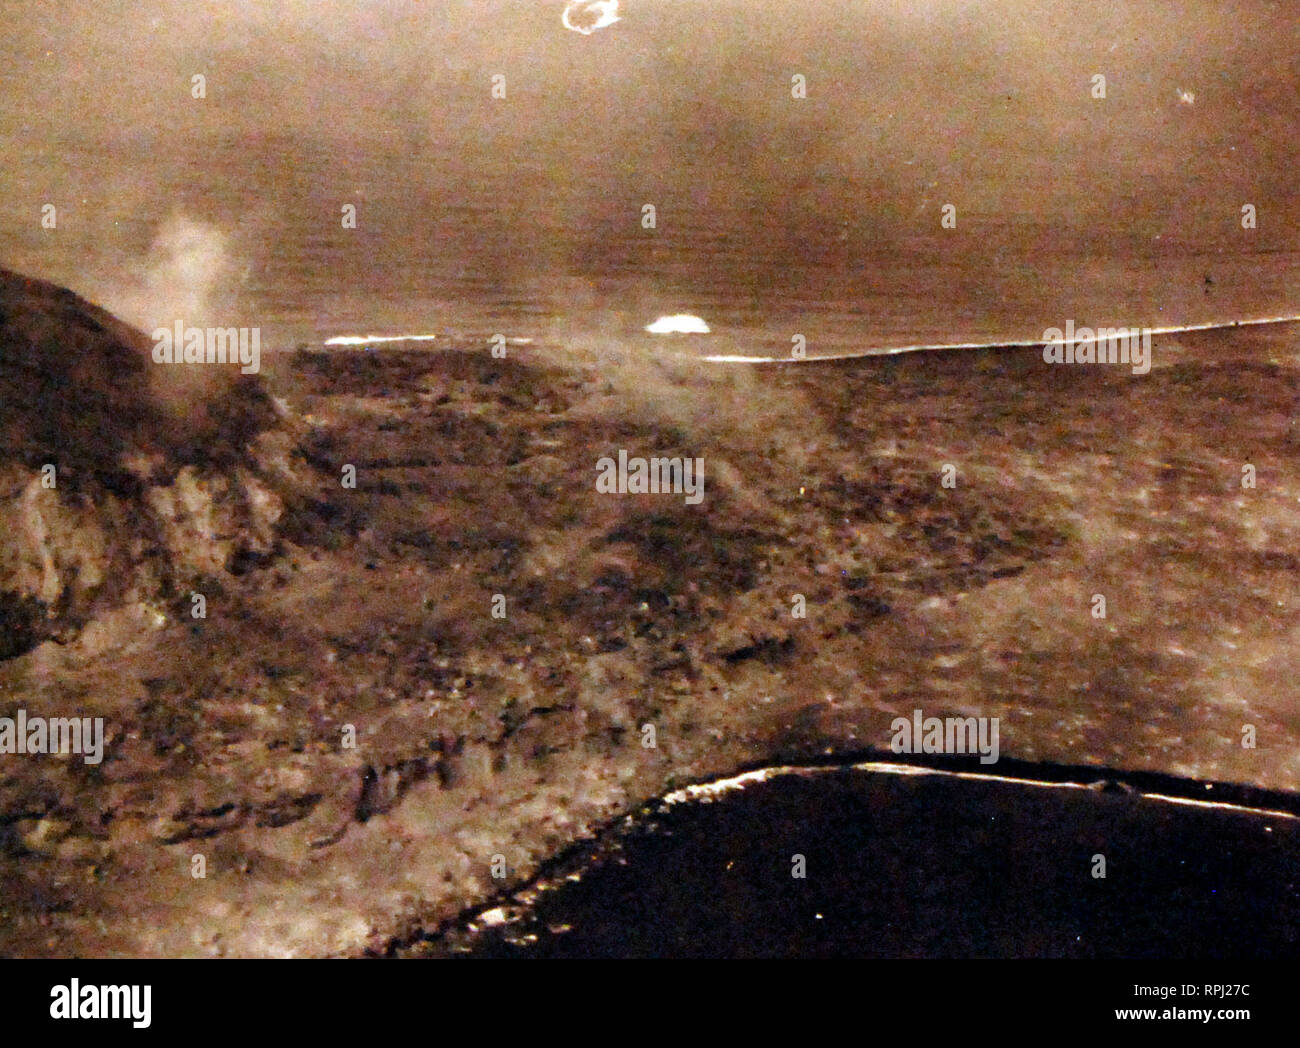 Bataille pour l'Iwo Jima, février-mars 1945. Mt. Suribachi sur Iwo Jima. Dommages causés par les bombardements aériens et les tirs de la marine peut être vu le long bluff et sur la plage. Photographié par avion depuis l'USS Makin Island (CVE 93) le jour J, le 19 février 1945. Banque D'Images